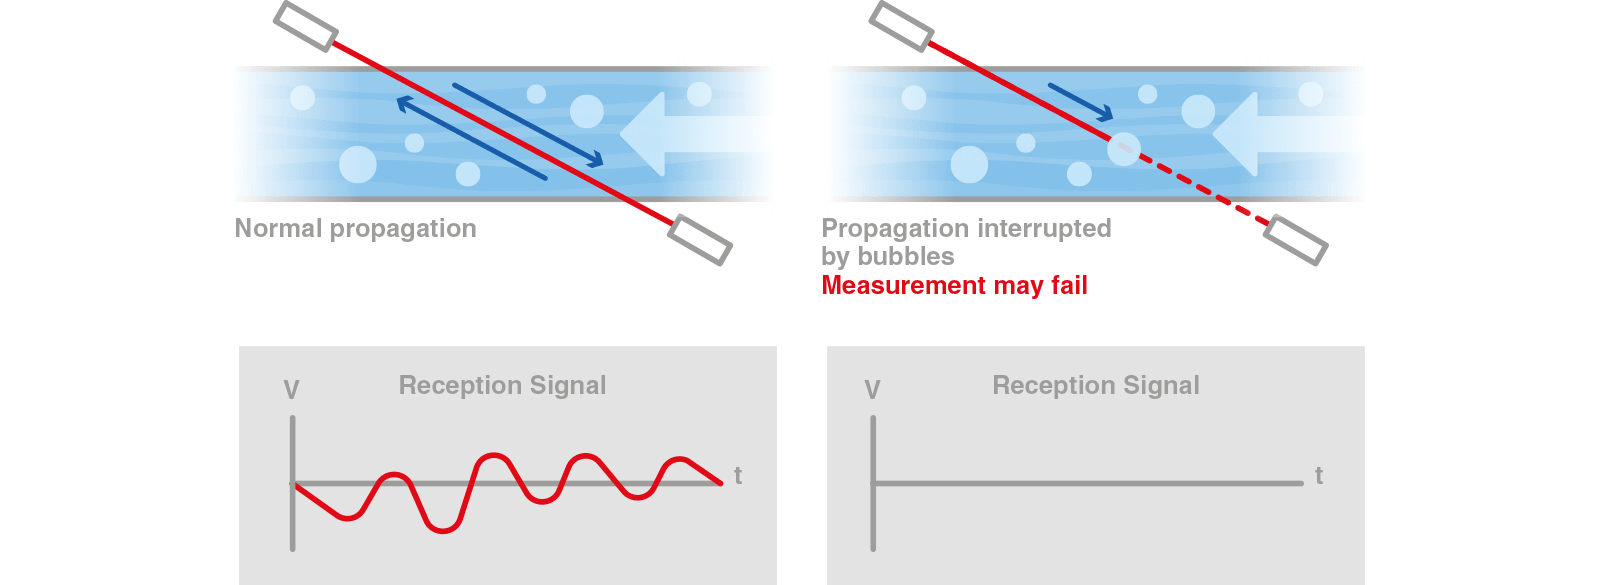 diagrama de tecnologia avançada de processamento de sinais digitais